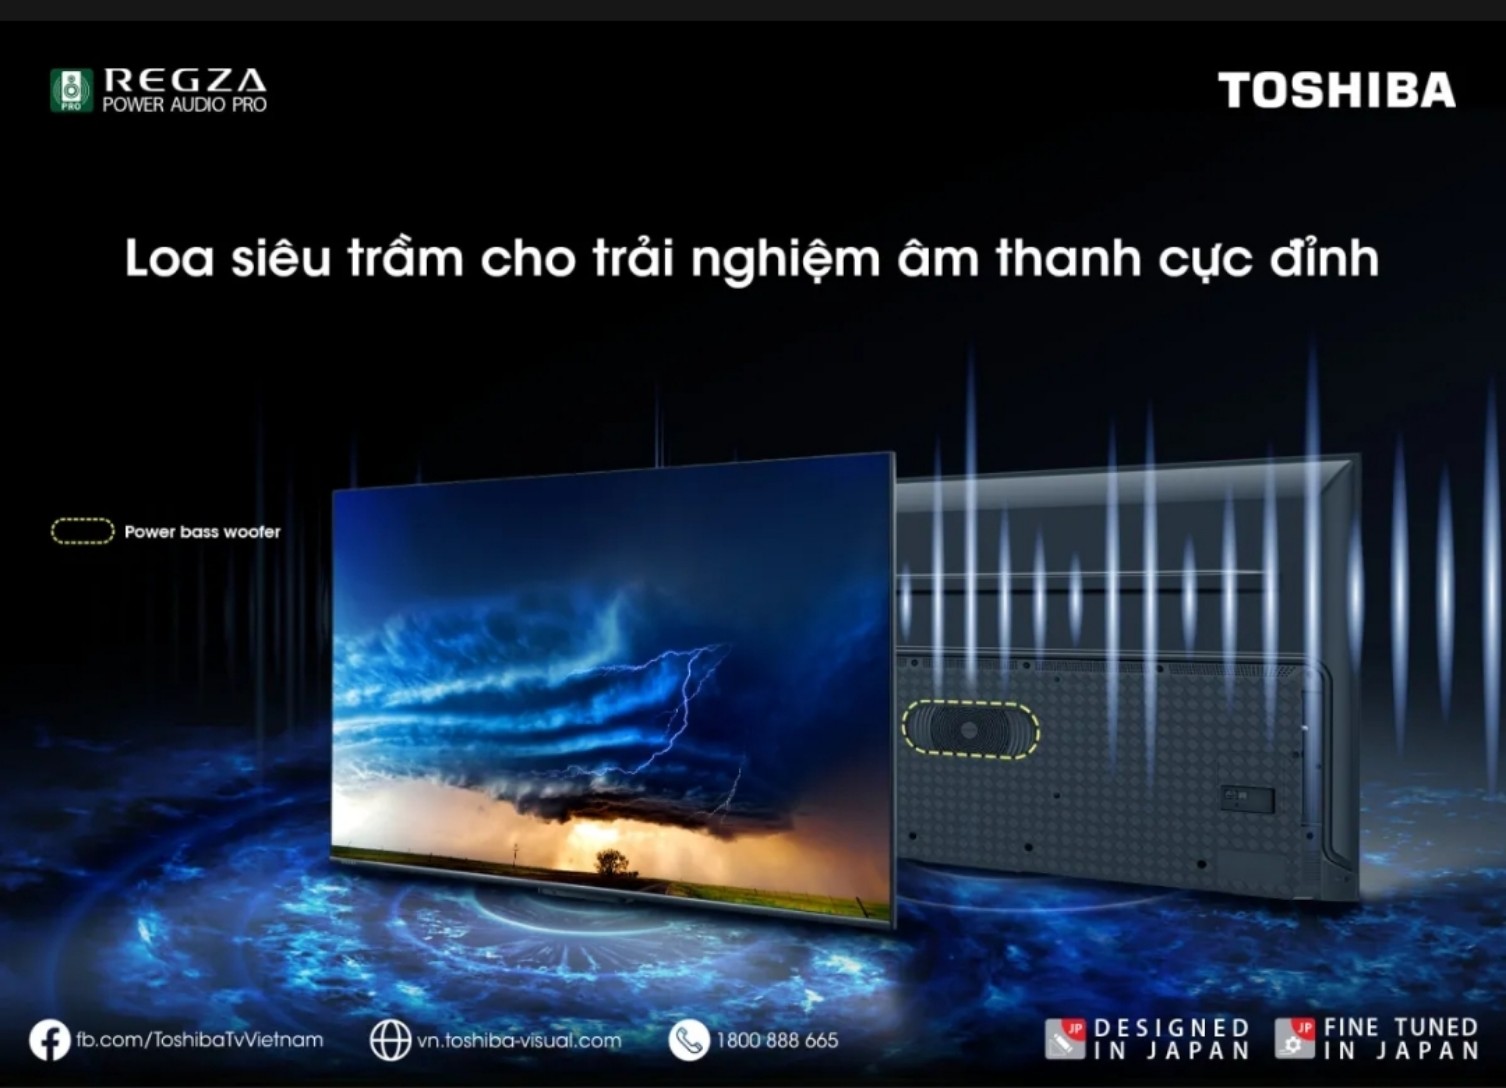 [Hàng chính hãng] Smart TV TOSHIBA Google QLED Quantum Dot 4k UHD 55'' 55M550LP - Tìm kiếm bằng giọng nói rảnh tay - Bảo hành chính hãng 2 năm